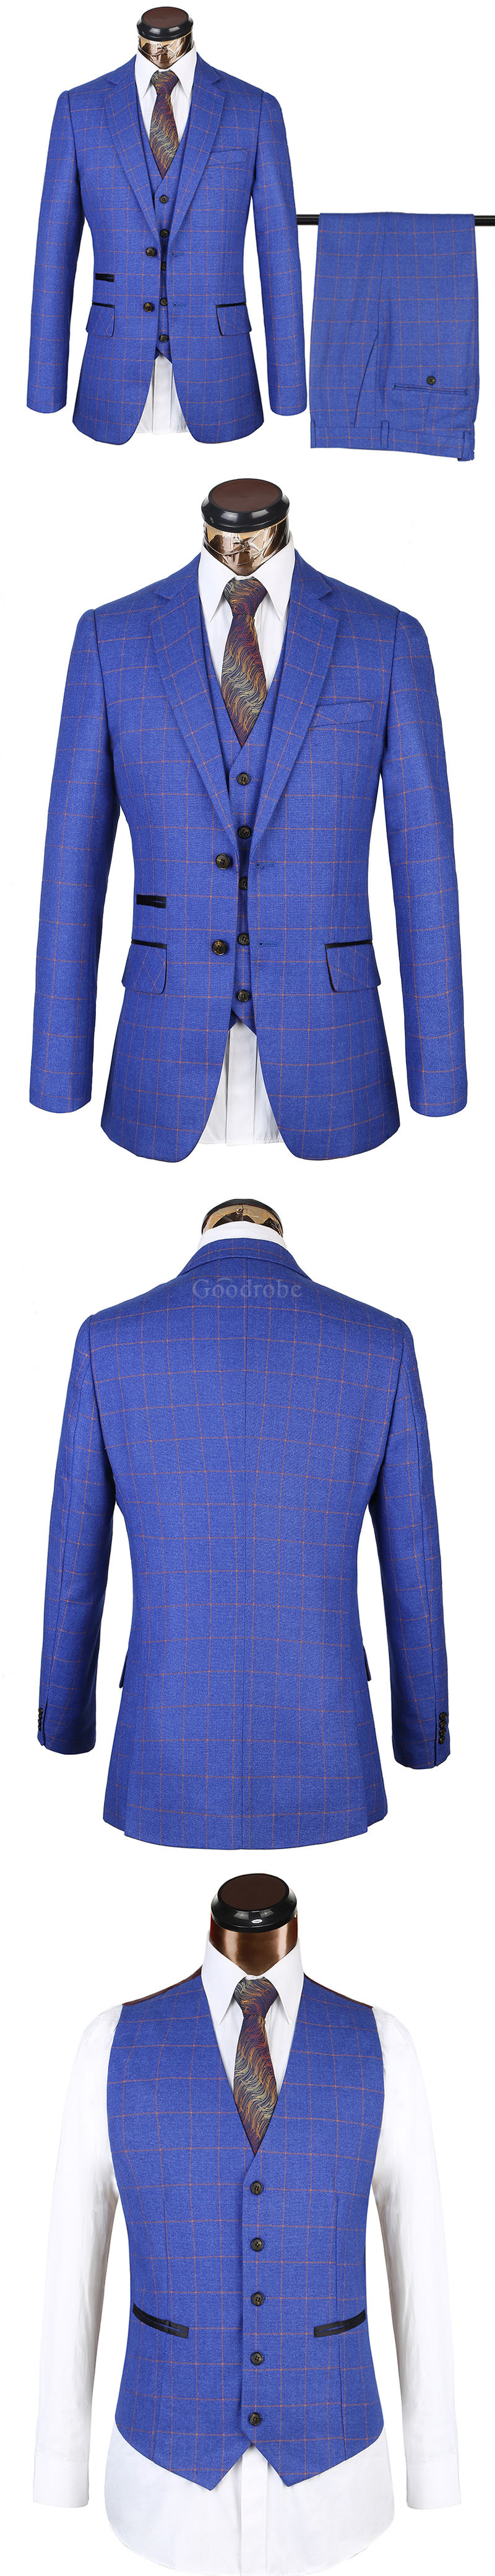 Costume d'affaires bleu mâle blazer plaid costume taille européenne